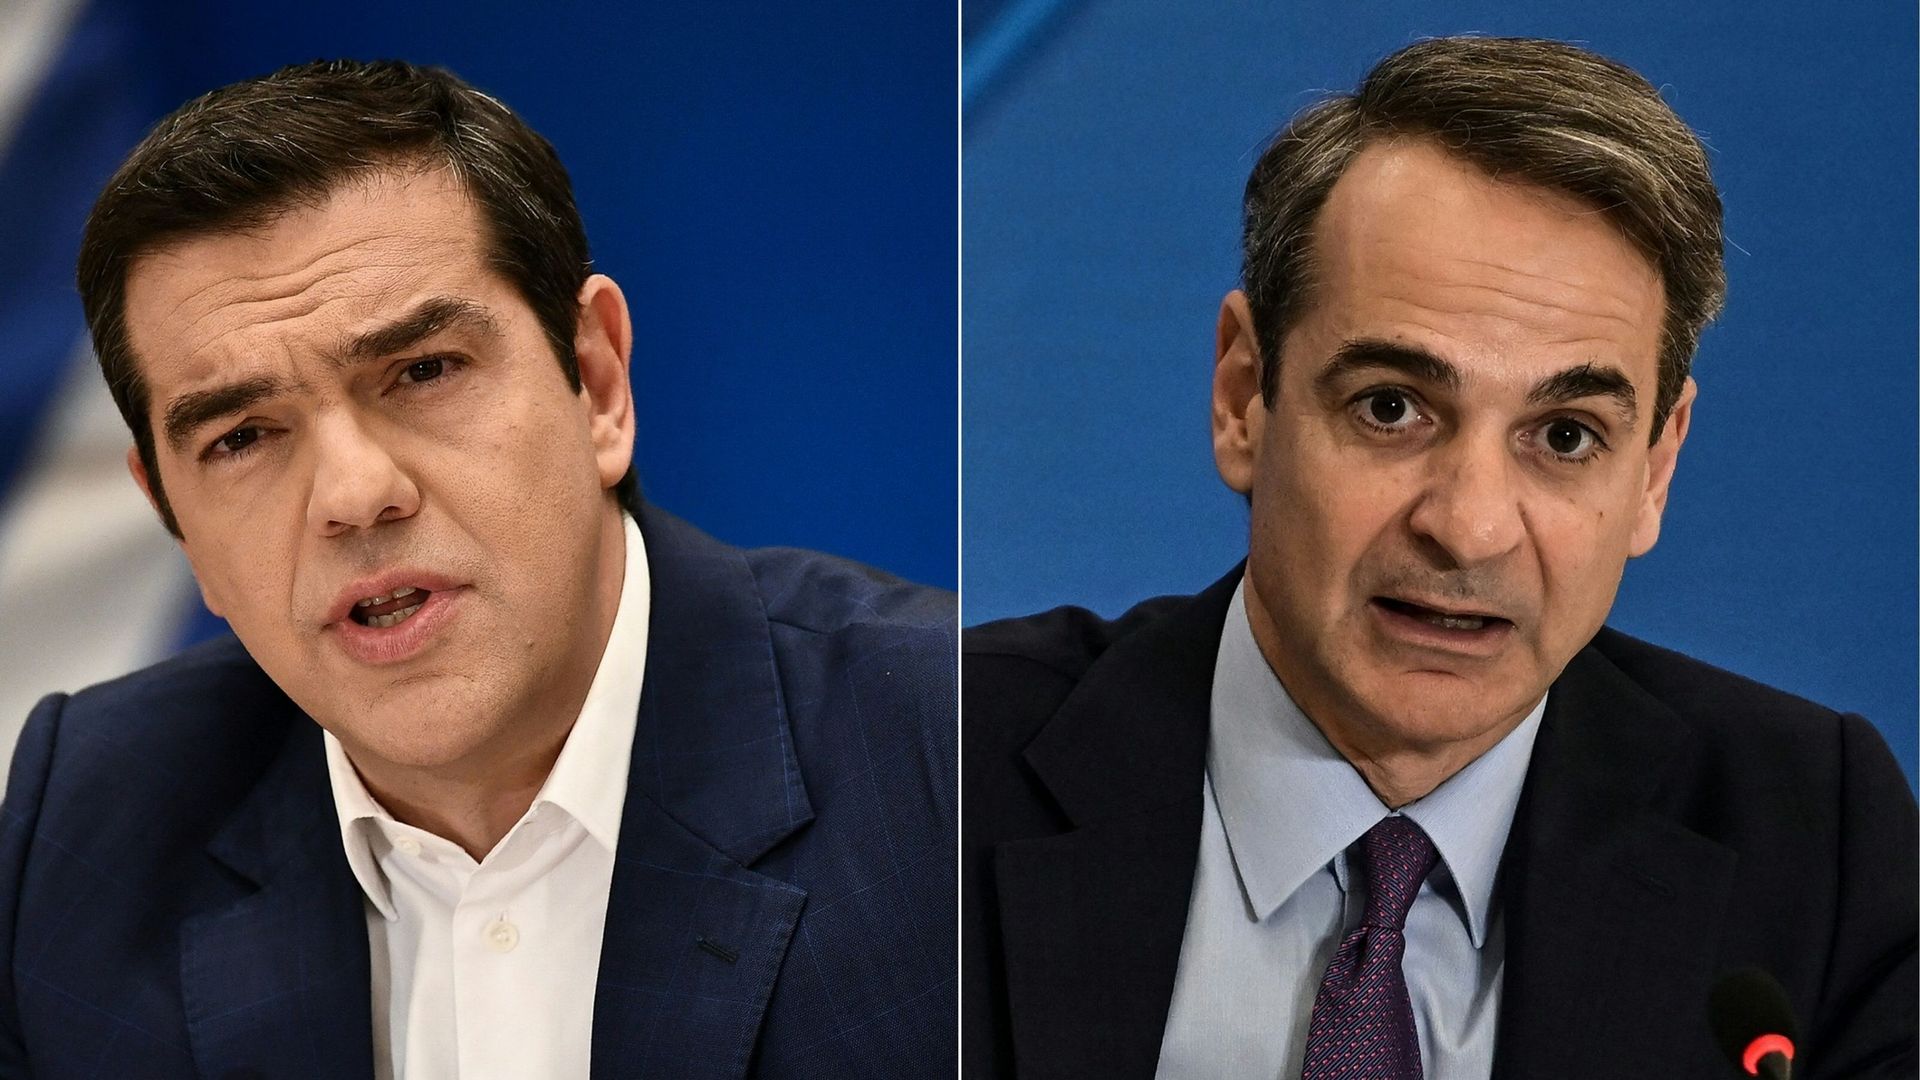 Le Premier ministre grec Alexis Tsipras (G) s'adressant à une conférence de presse à Athènes le 7 mai 2019, et le Premier ministre grec Kyriakos Mitsotakis s'exprimant lors d'une conférence de presse pour discuter de l'économie et de l'emploi, à Athènes l